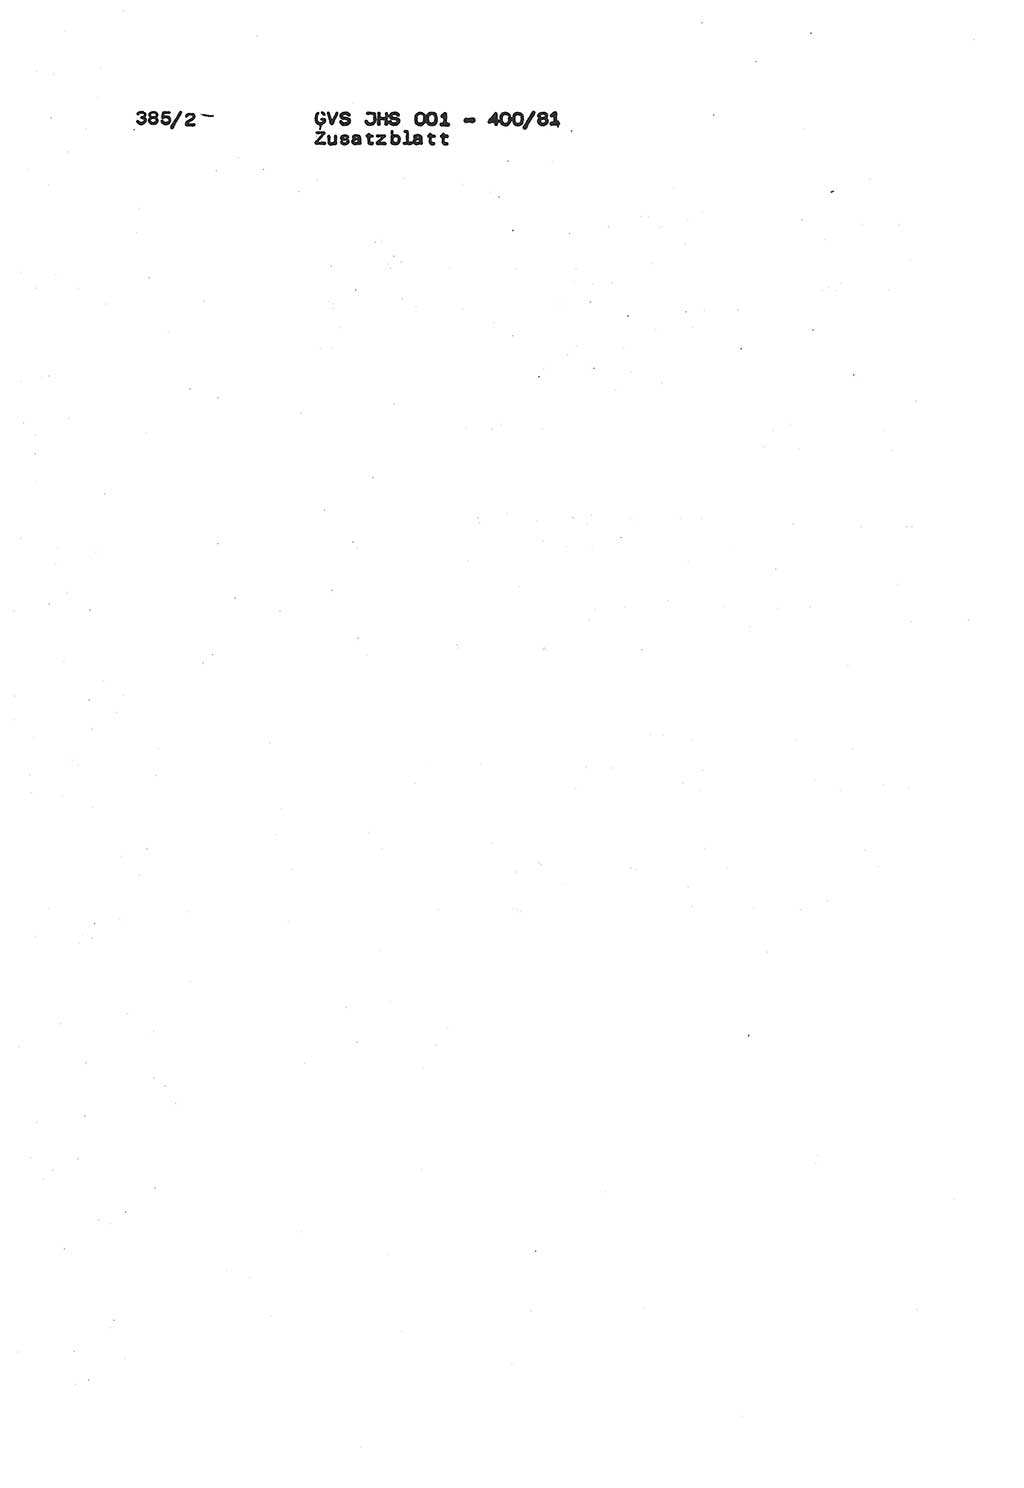 Wörterbuch der politisch-operativen Arbeit, Ministerium für Staatssicherheit (MfS) [Deutsche Demokratische Republik (DDR)], Juristische Hochschule (JHS), Geheime Verschlußsache (GVS) o001-400/81, Potsdam 1985, Blatt 385/2 (Wb. pol.-op. Arb. MfS DDR JHS GVS o001-400/81 1985, Bl. 385/2)